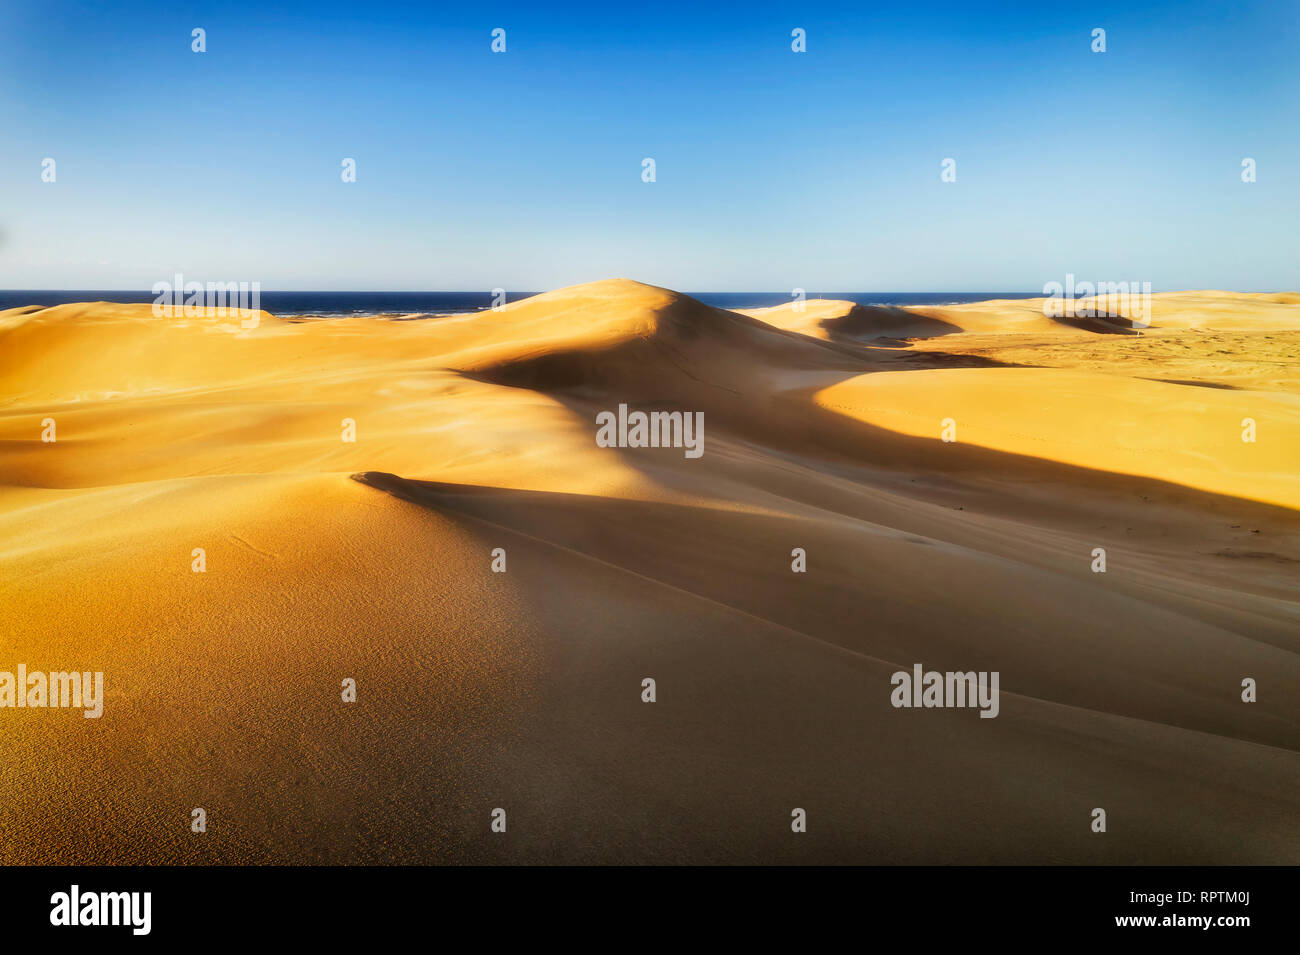 Soleil jaune allumé sands dans le climat aride et désertique de dunes autour de Stockton Beach sur la côte pacifique de l'Australie - voir l'horizon au-dessus de la mer en vertu contre sk bleu Banque D'Images